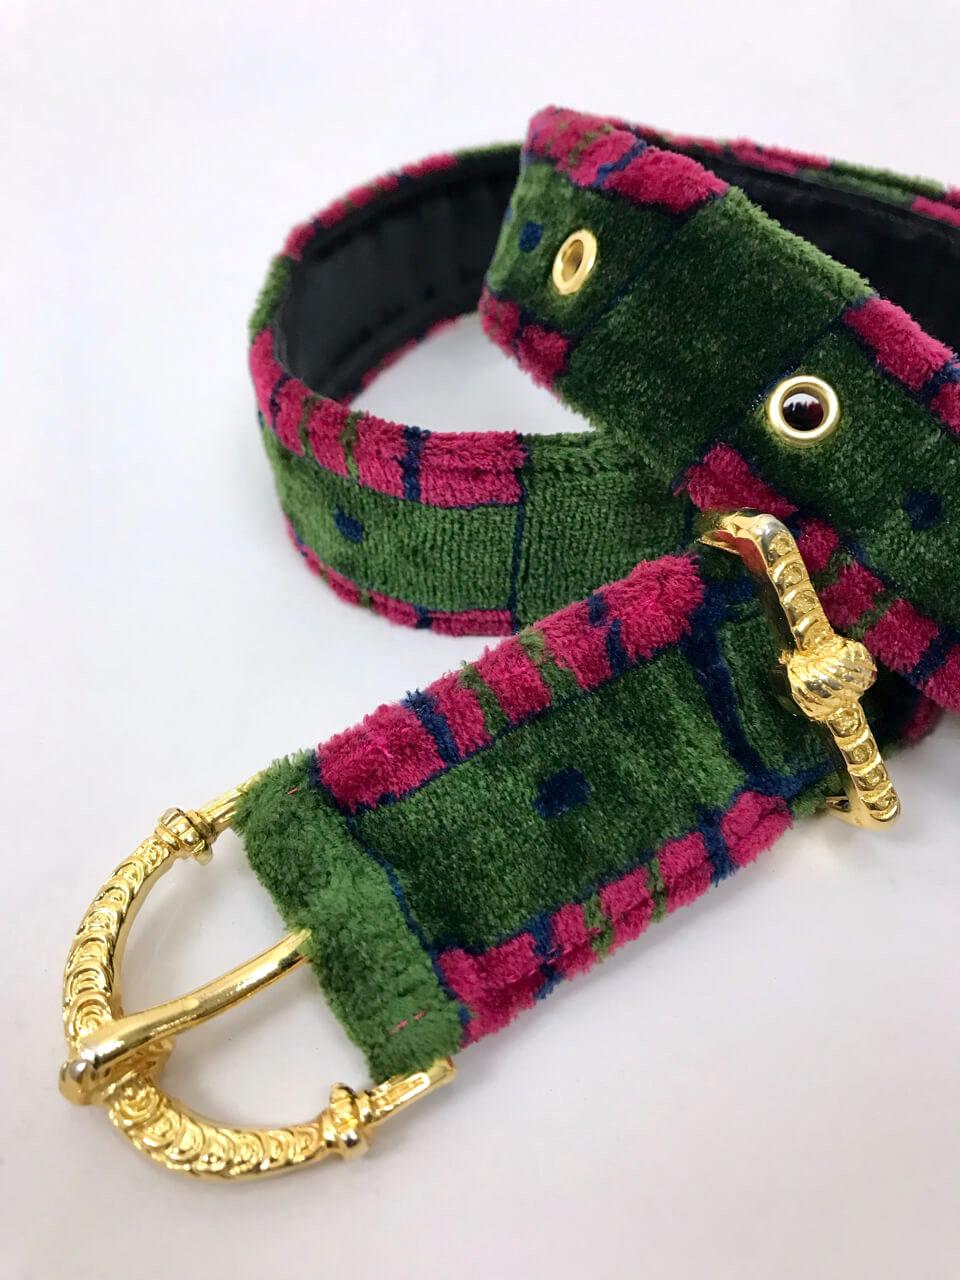 Collectional, extrêmement rare et de collection, la ceinture en trompe l'Oeil de Roberta di Camerino, datant des années 1970. La ceinture en velours pelucheux présente l'imprimé emblématique de l'illusion de ceinture dans les coloris vert bouteille,